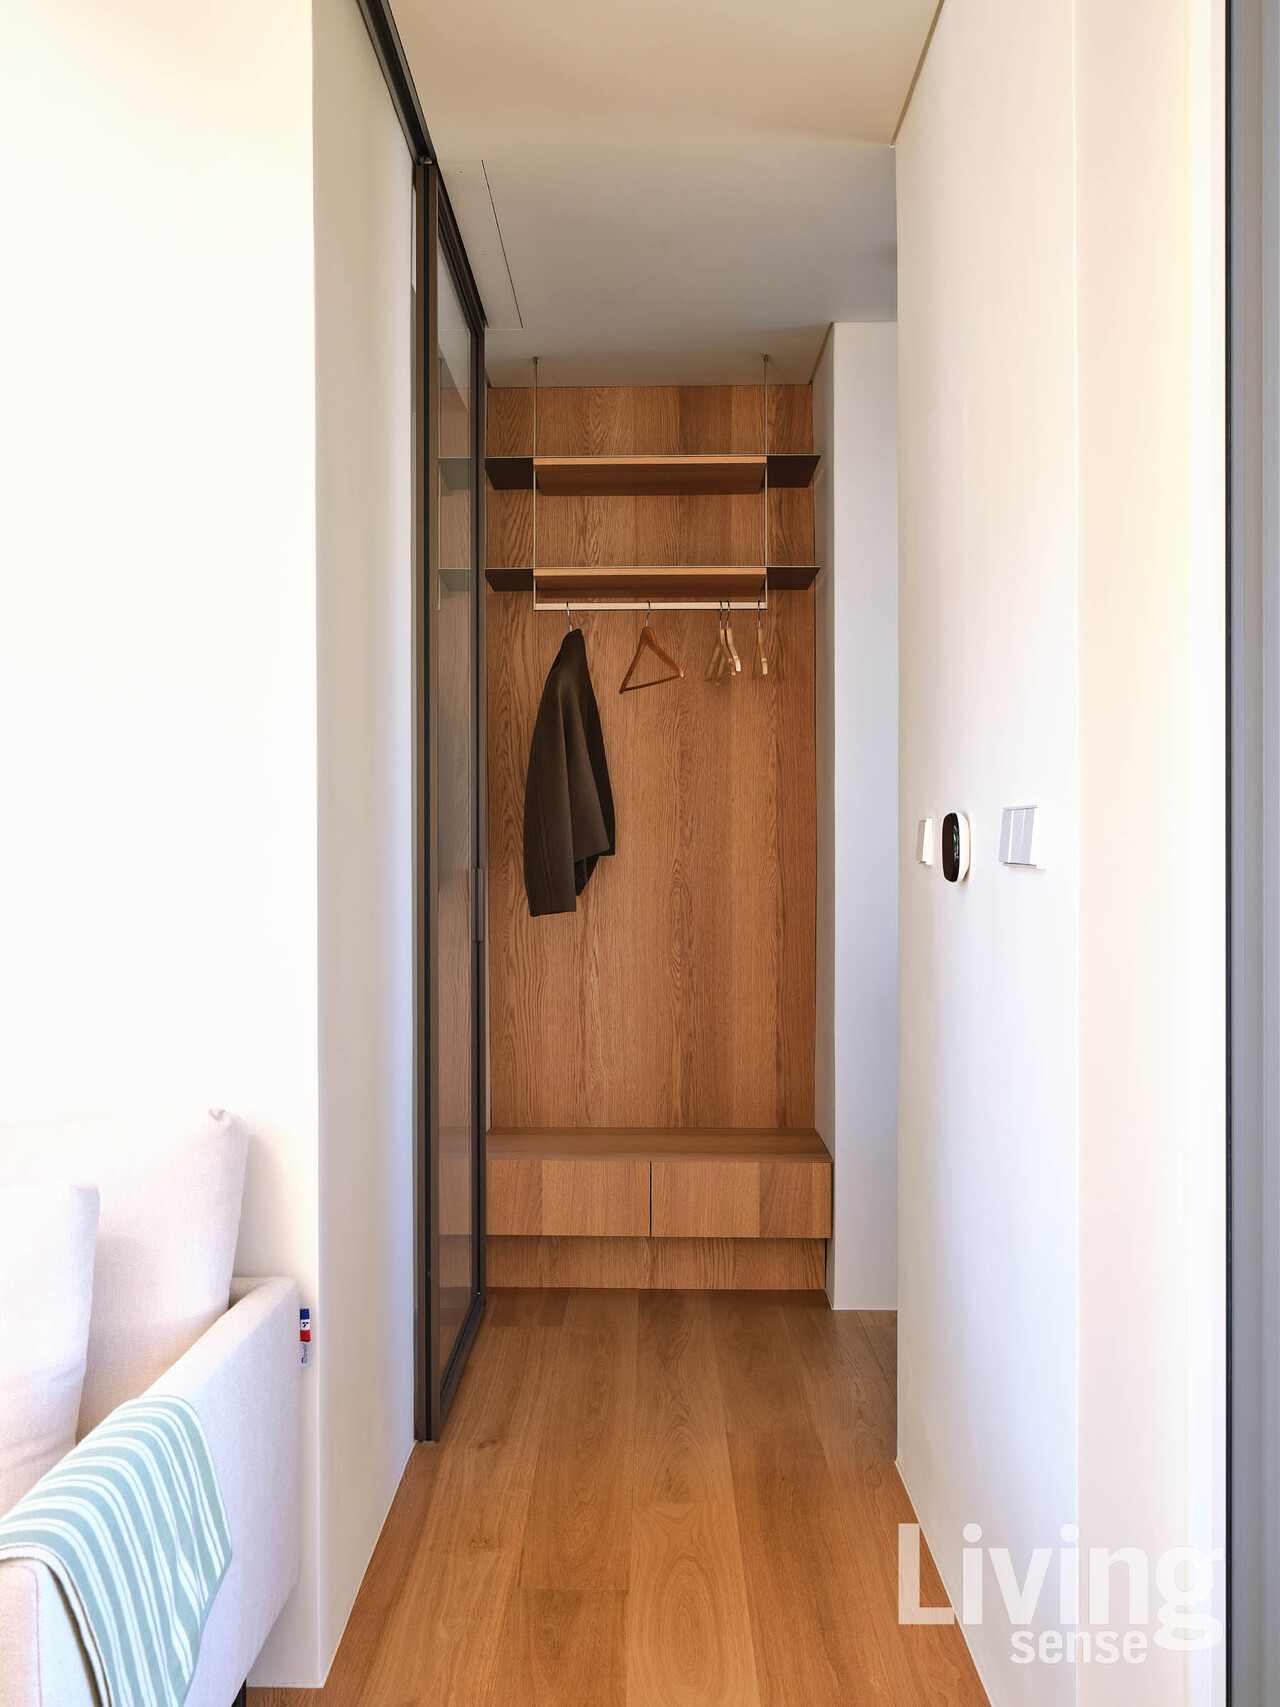 현관에 설치한 코트장. 거실로 들어오기 전에 외투를 걸어둘 수 있는 공간 구성이 돋보인다. 